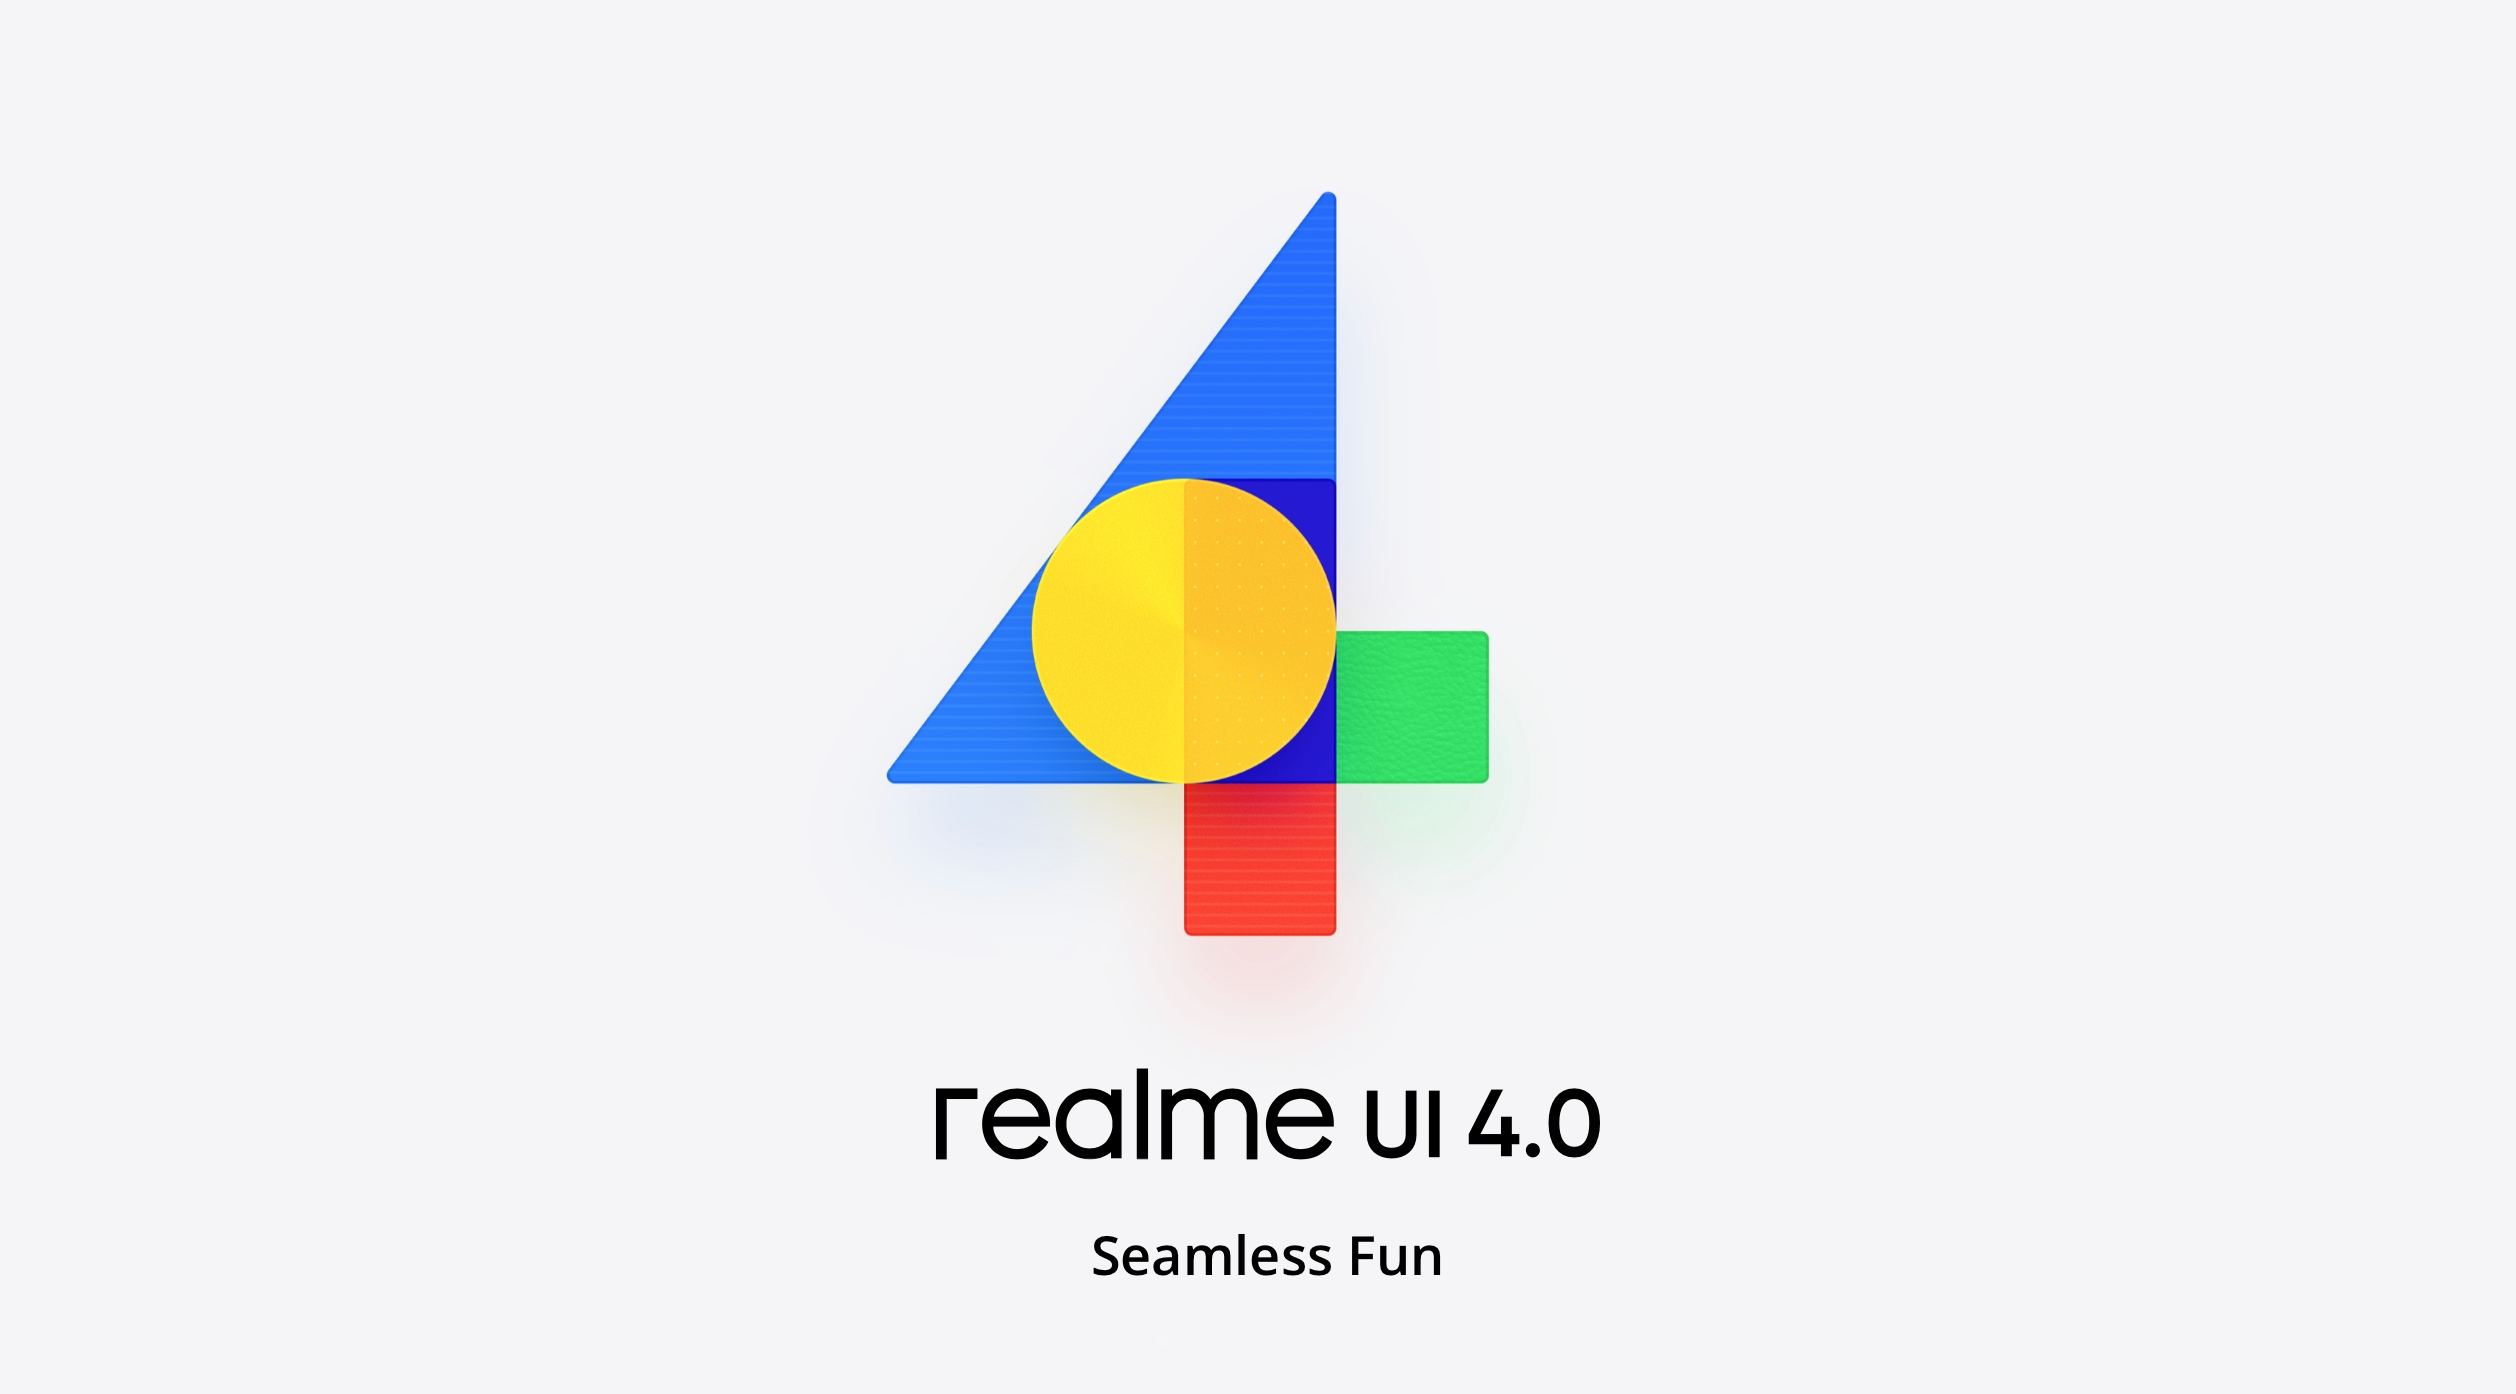 realme hat die realme UI 4.0 Shell auf Basis des Betriebssystems Android 13 vorgestellt